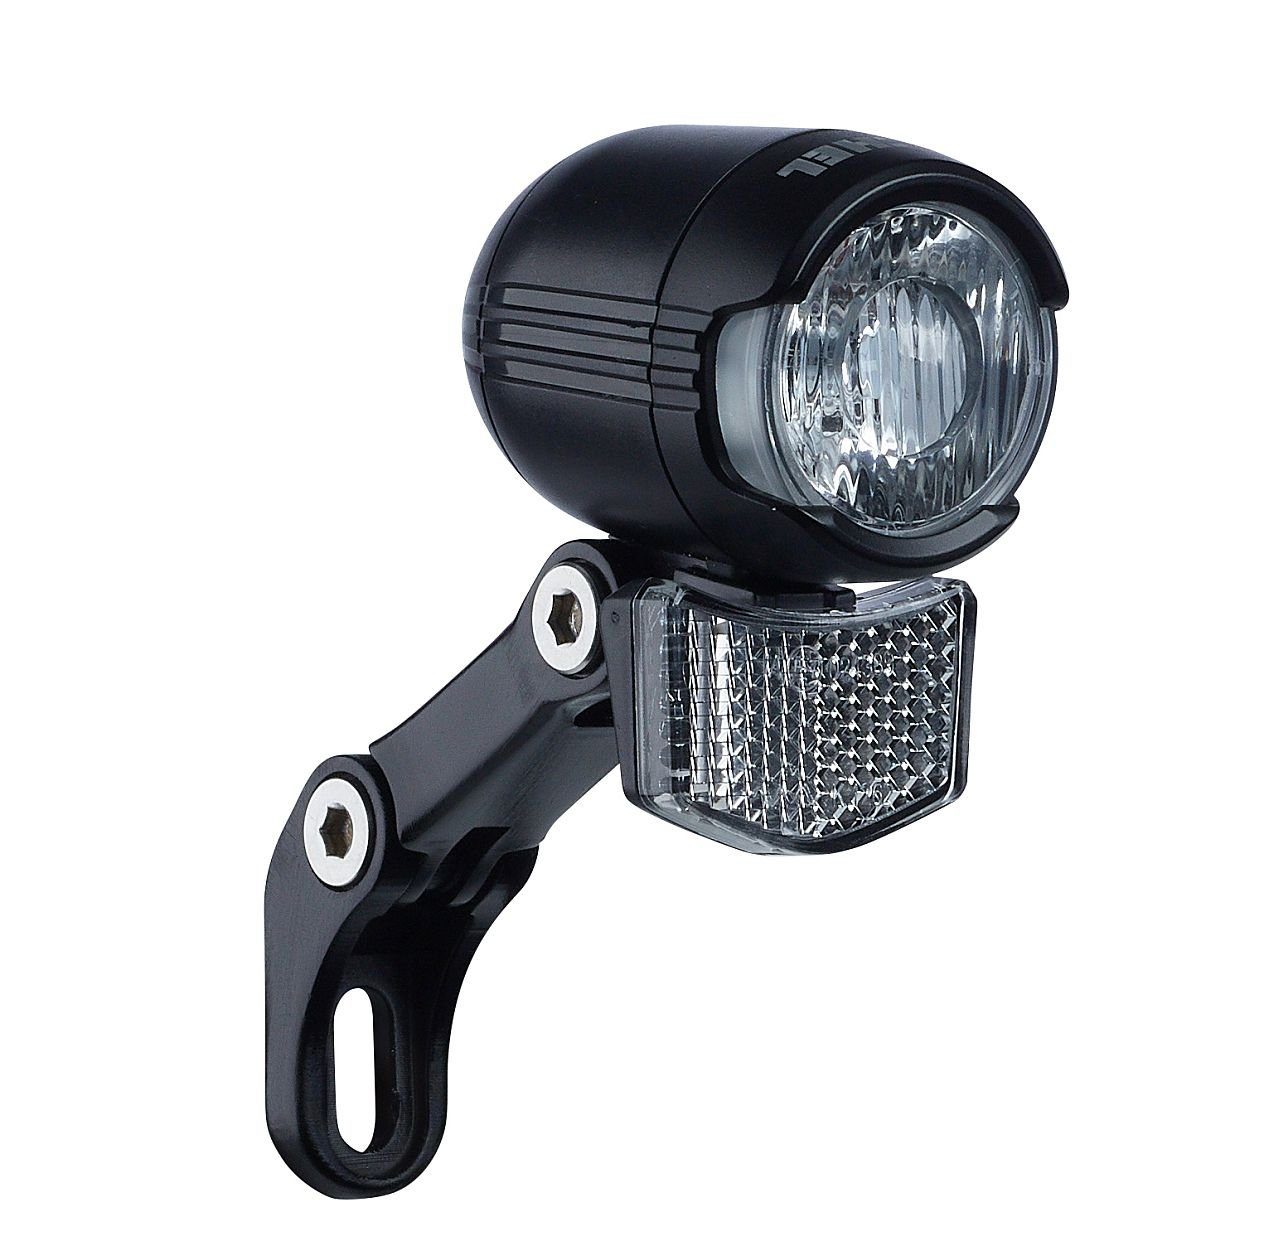 Büchel Fahrradbeleuchtung LED Scheinwerfer Shiny 40 SL 40 Lux Sensor Standlicht Schalter